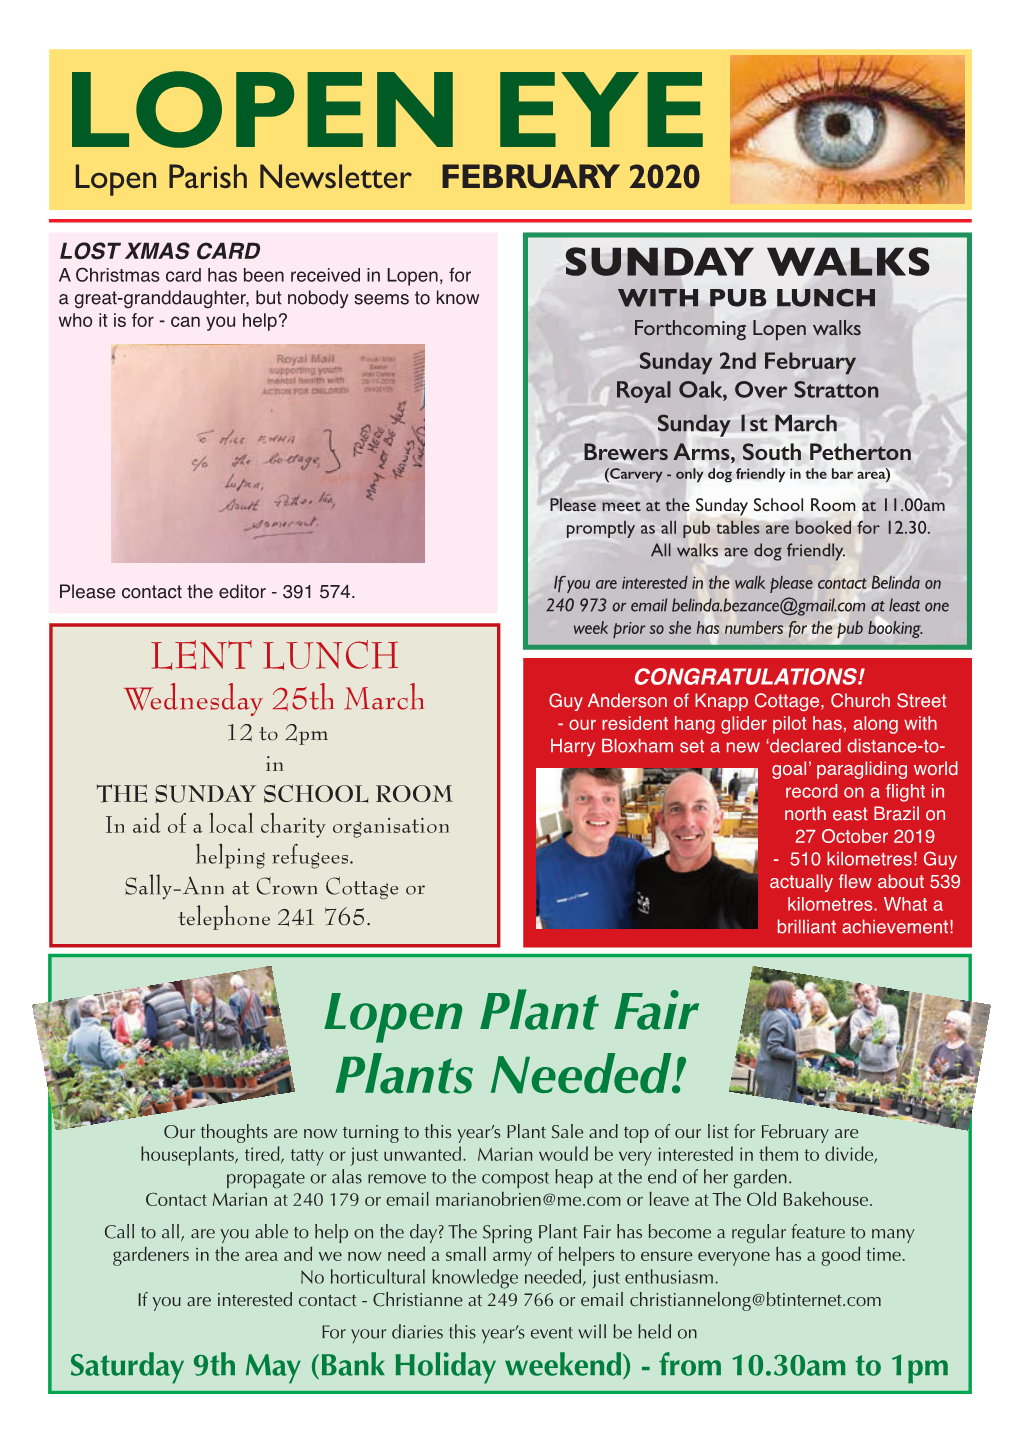 LOPEN EYE Lopen Parish Newsletter FEBRUARY 2020